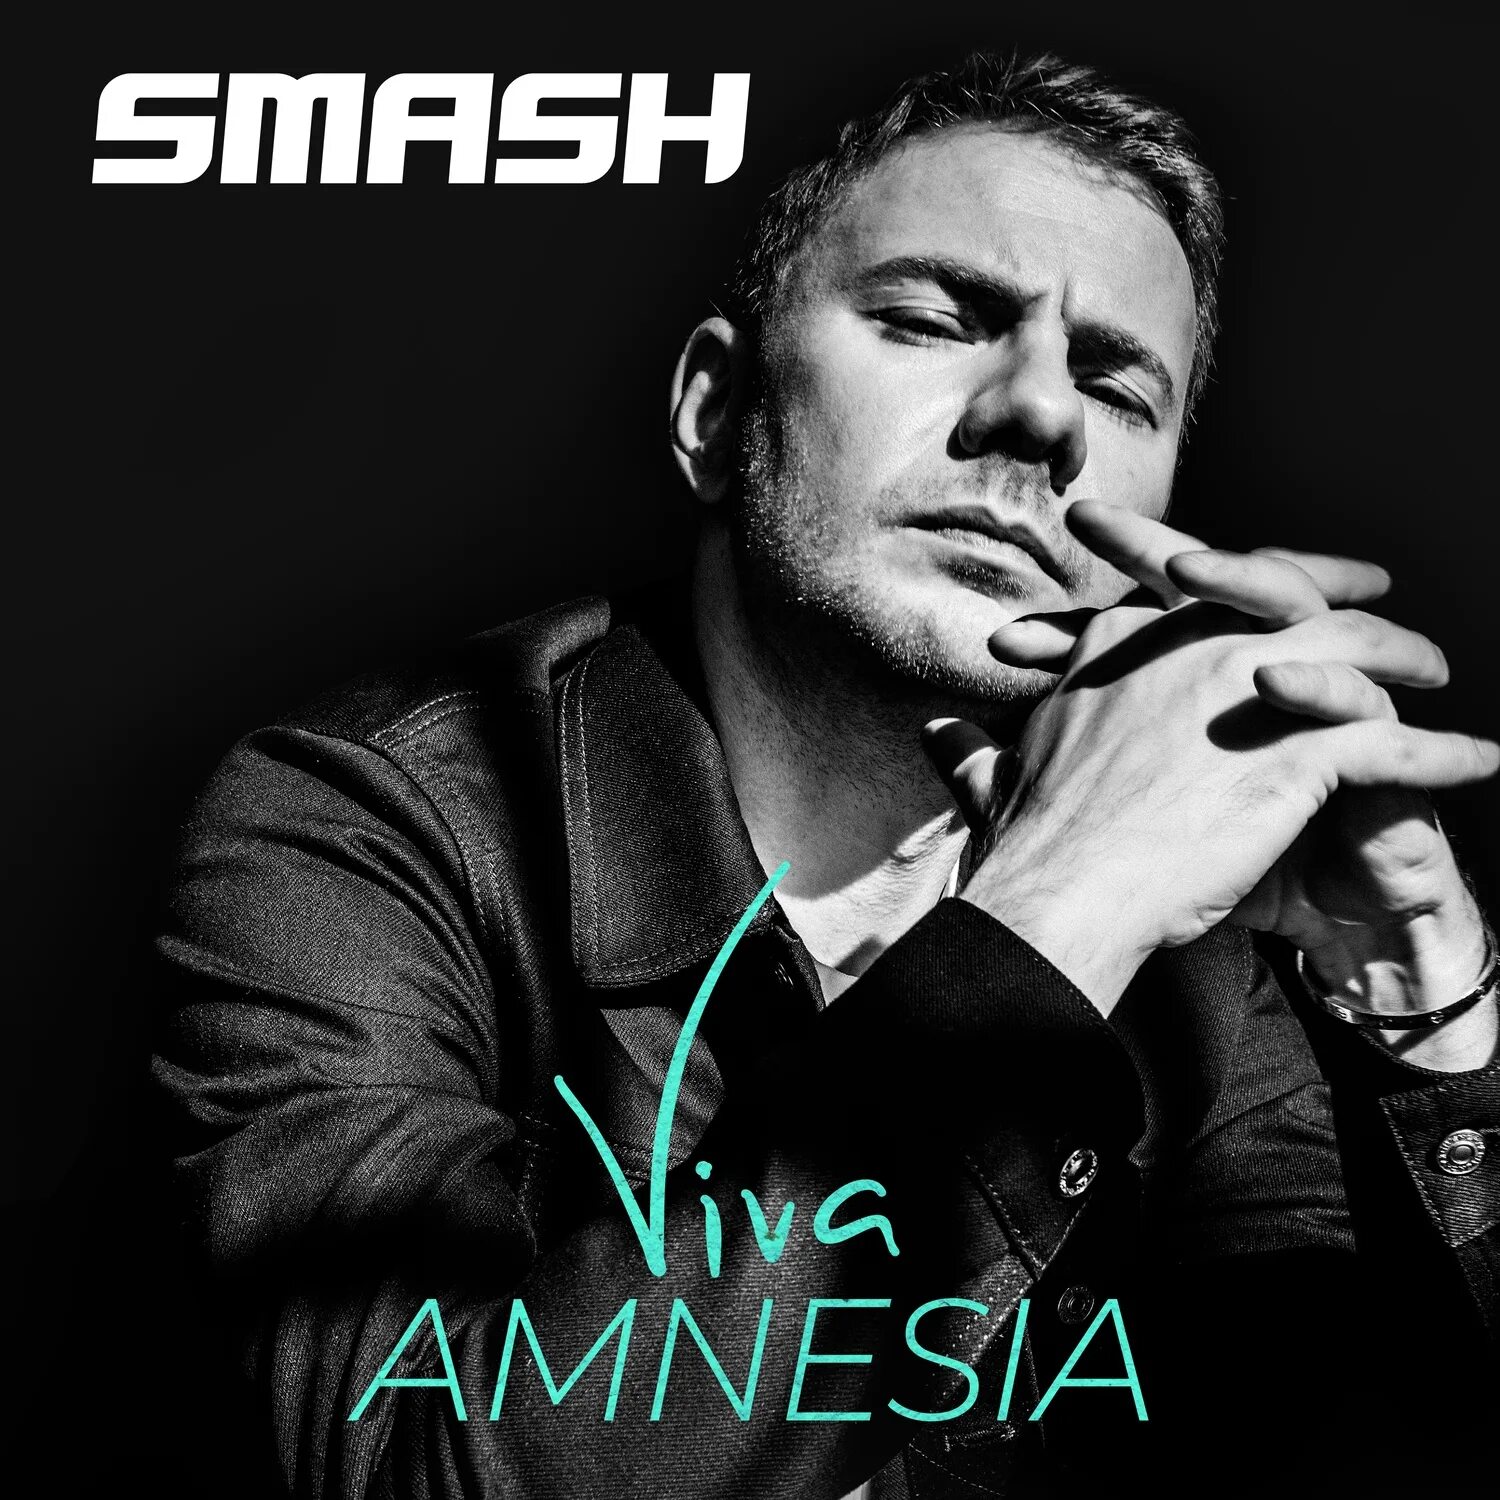 DJ Smash. Smash певец. DJ Smash Viva Amnesia. DJ Smash фото. Песни дж смеша